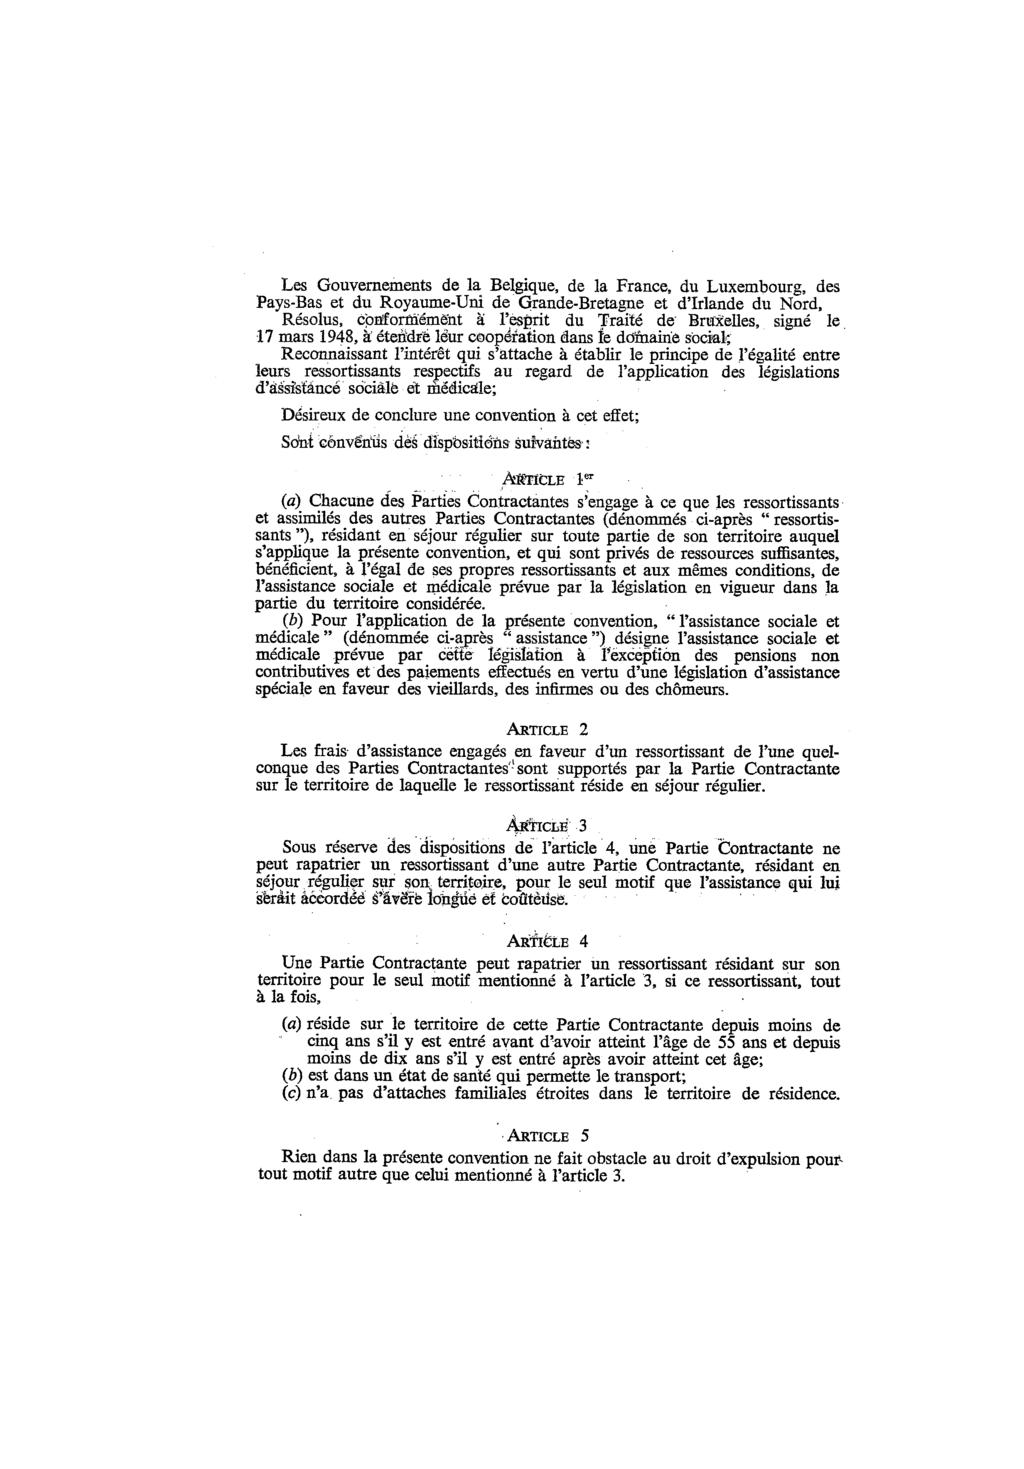 Les Gouvernements de la Belgique, de la France, du Luxembourg, des Pays-Bas et du Royaume-Uni de Grande-Bretagne et d'irlande du Nord, Résolus, conformément à l'esprit du Traité de Bruxelles, signé